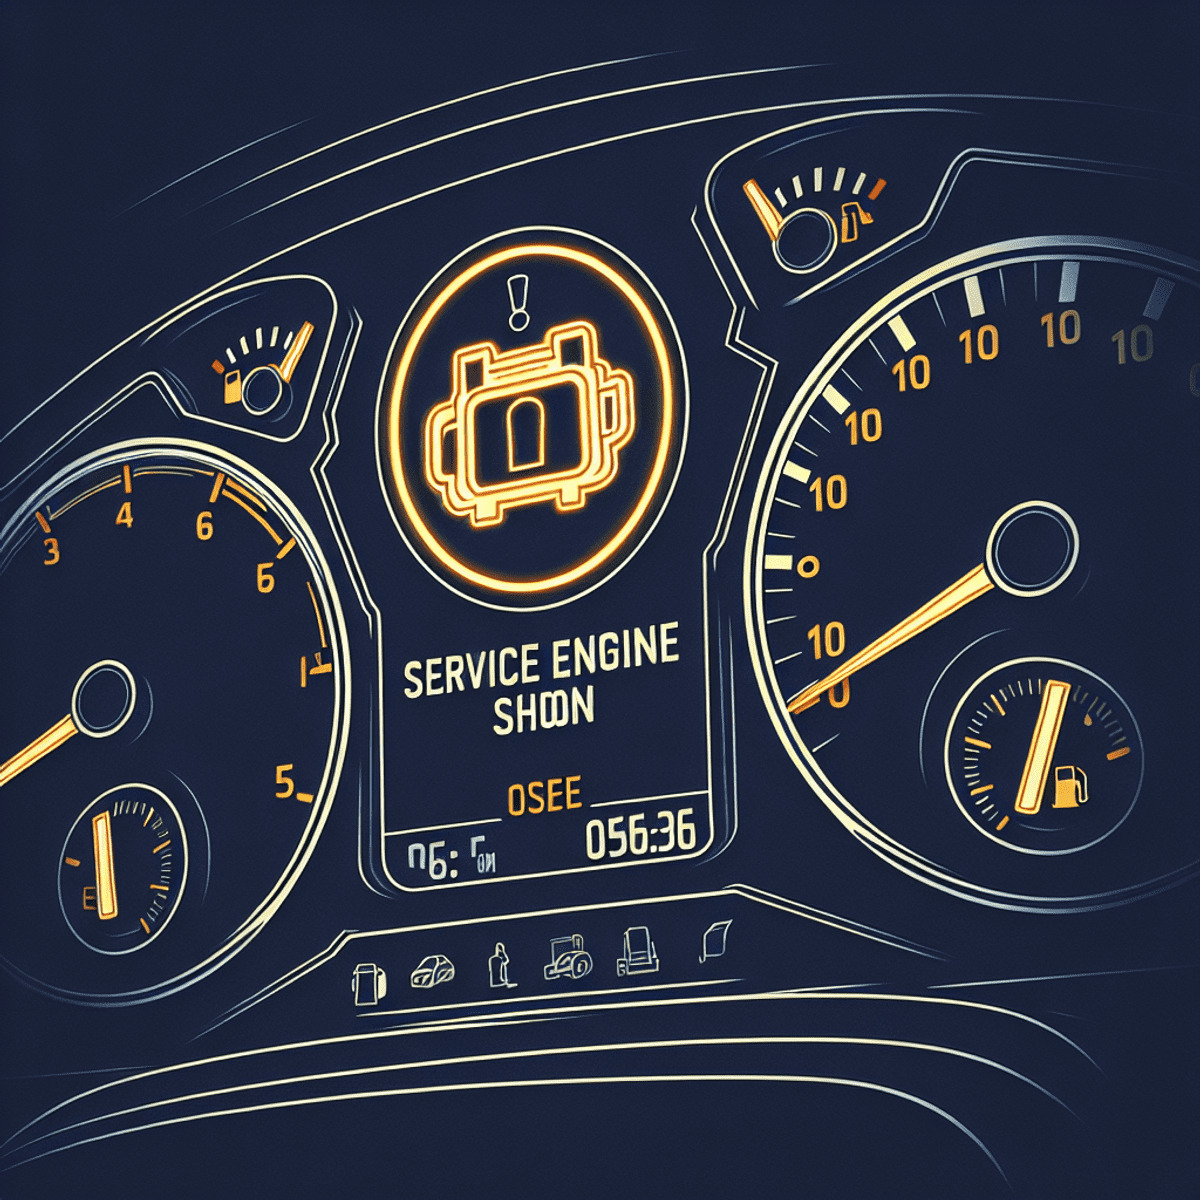 Engine Service Soon: Guía Completa para Entender y Solucionar el Problema